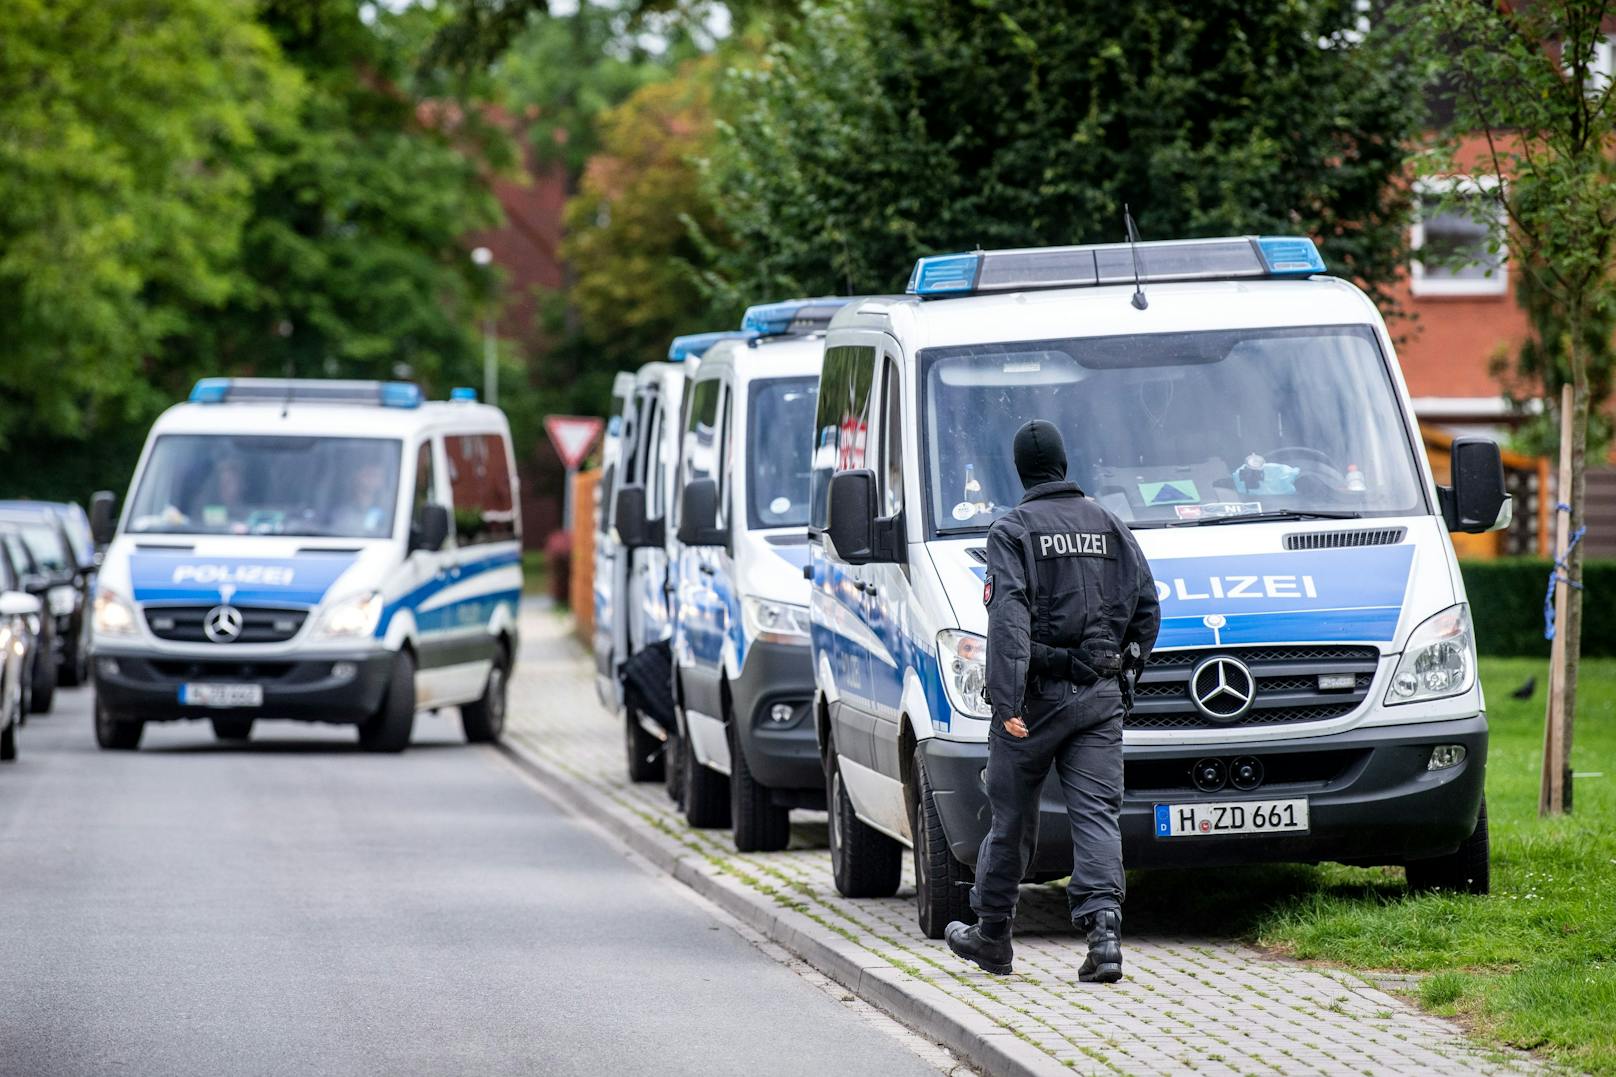 Mann wünscht Polizisten "sowas wie in Rheinland-Pfalz"